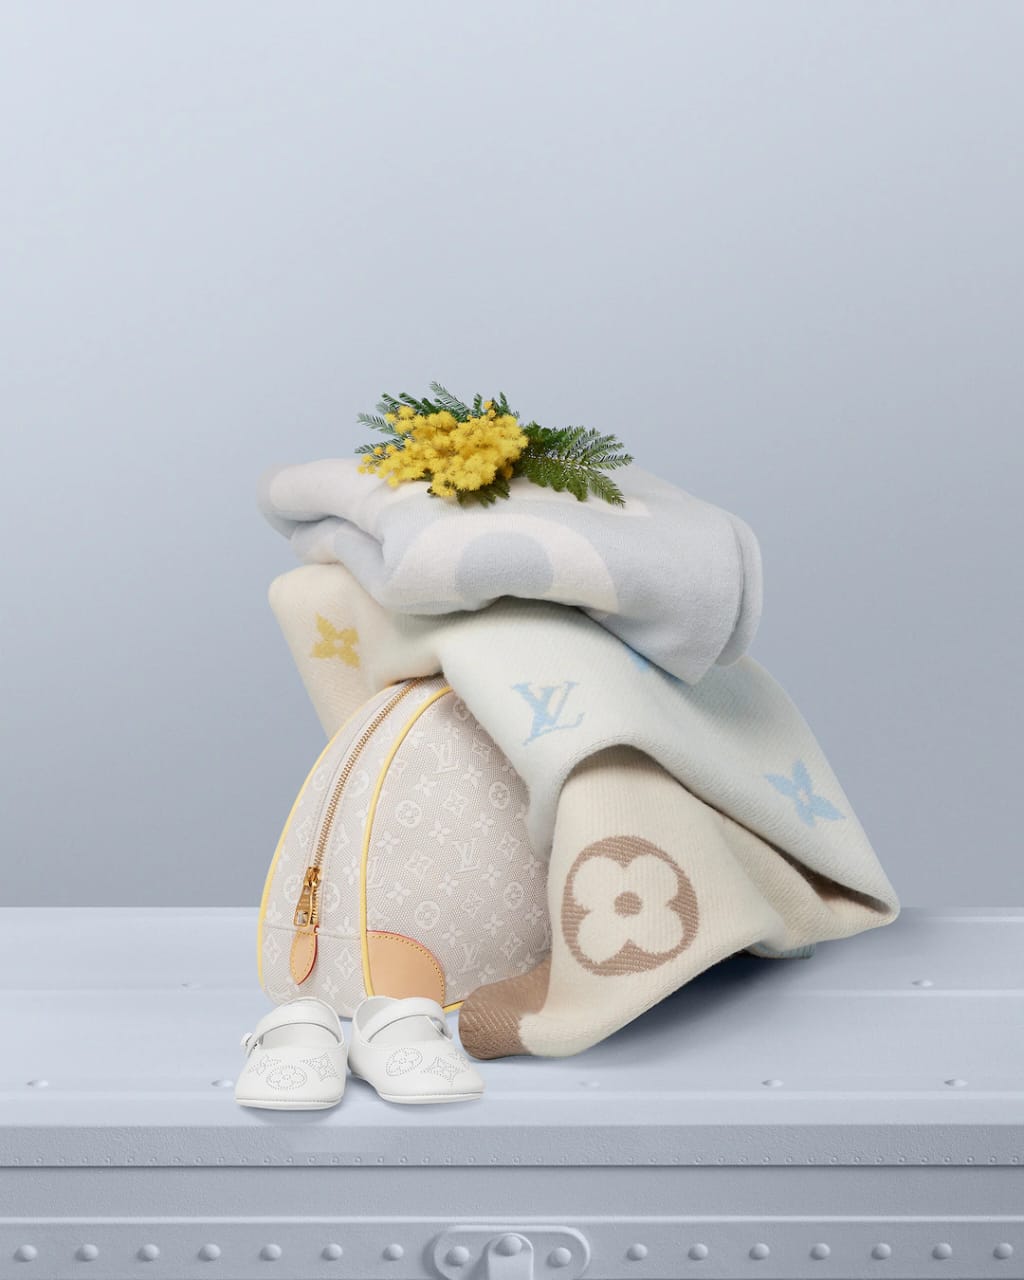 Cobertores, necessaire e sapato da linha Baby da LOUIS VUITTON (Foto: Reprodução / Site Oficial Louis Vuitton)